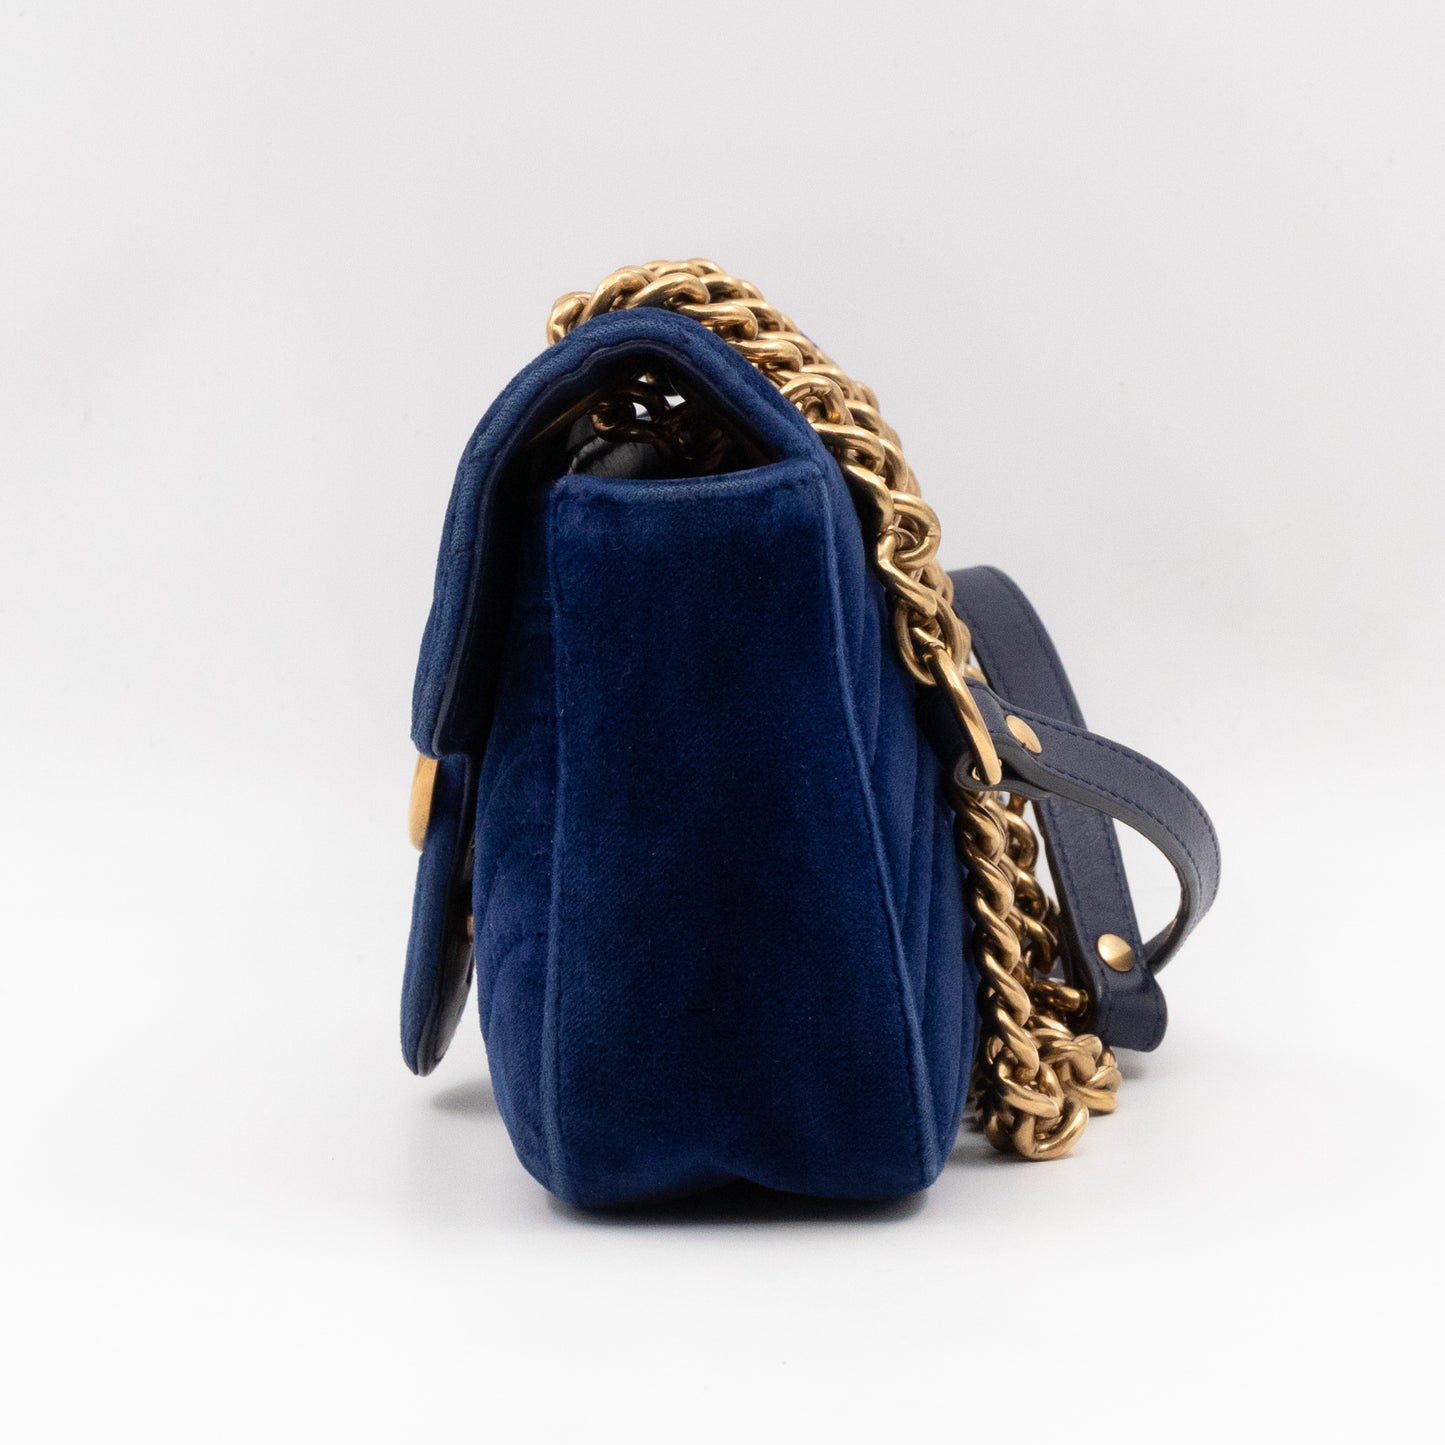 GG Marmont Mini Flap Bag Blue Velvet